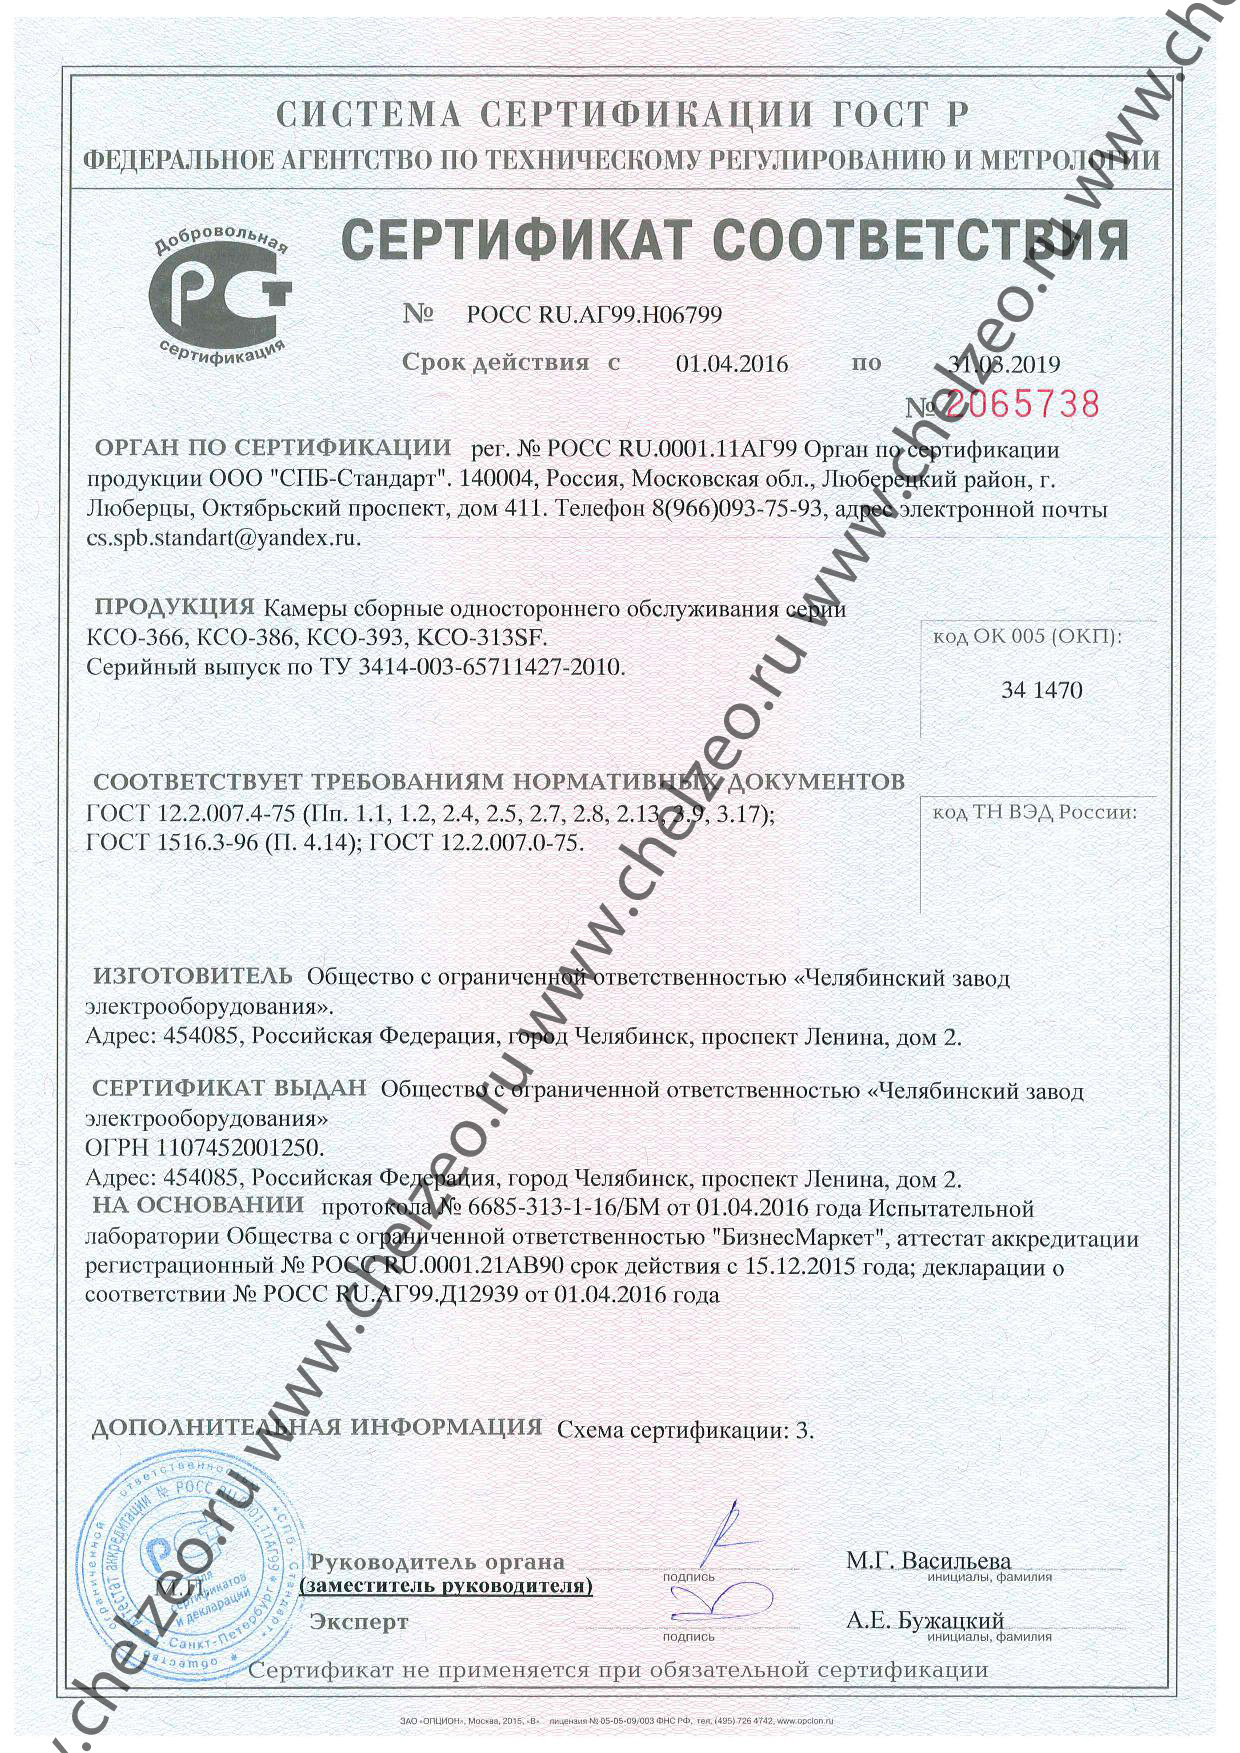 Сертификат на камеры сборные одностороннего обслуживания КСО-366,КСО-386,КСО-393